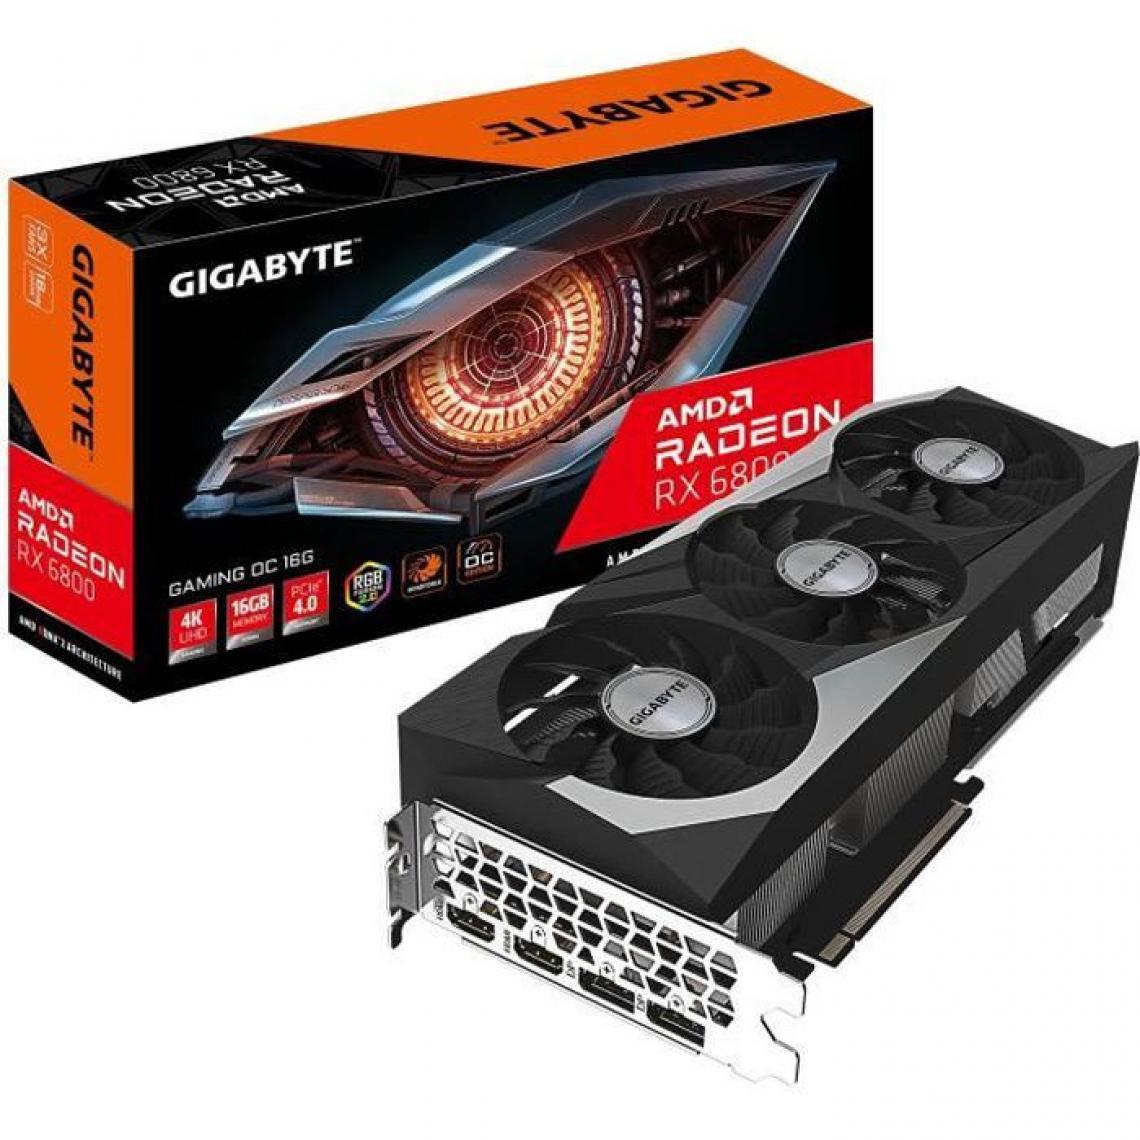 Gigabyte - GIGABYTE Radeon RX 6800 Gaming OC - 16 Go (GV-R68GAMING OC-16GD) - Carte Graphique NVIDIA